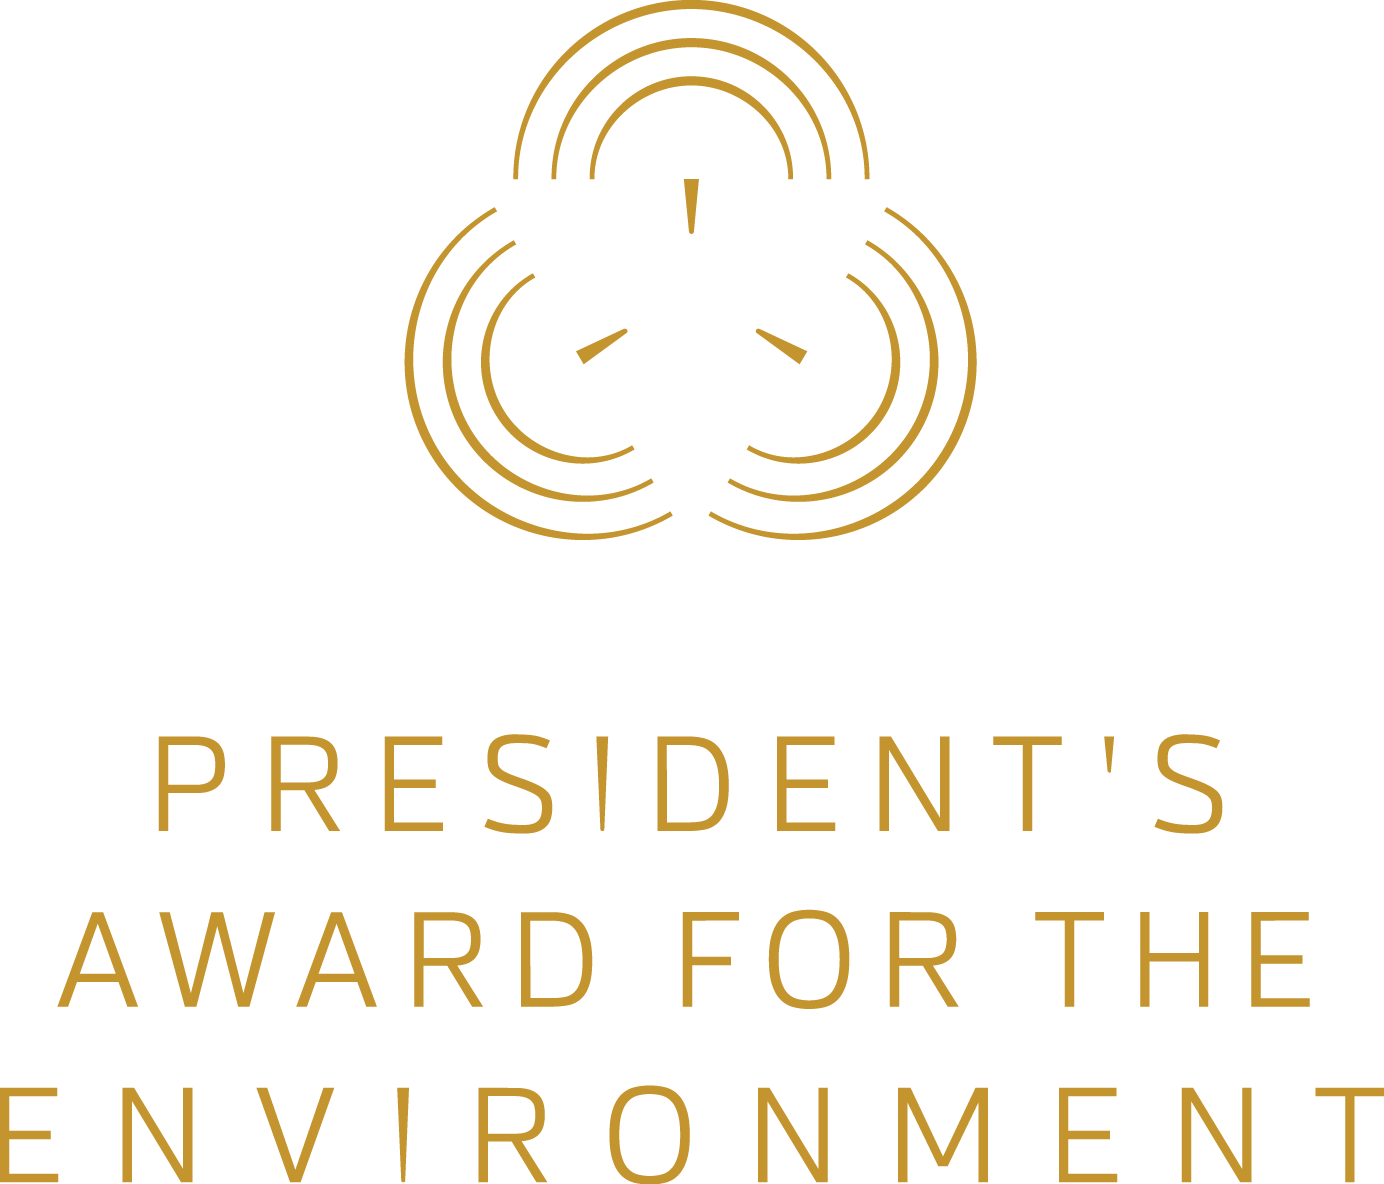 President's Award for the Environment